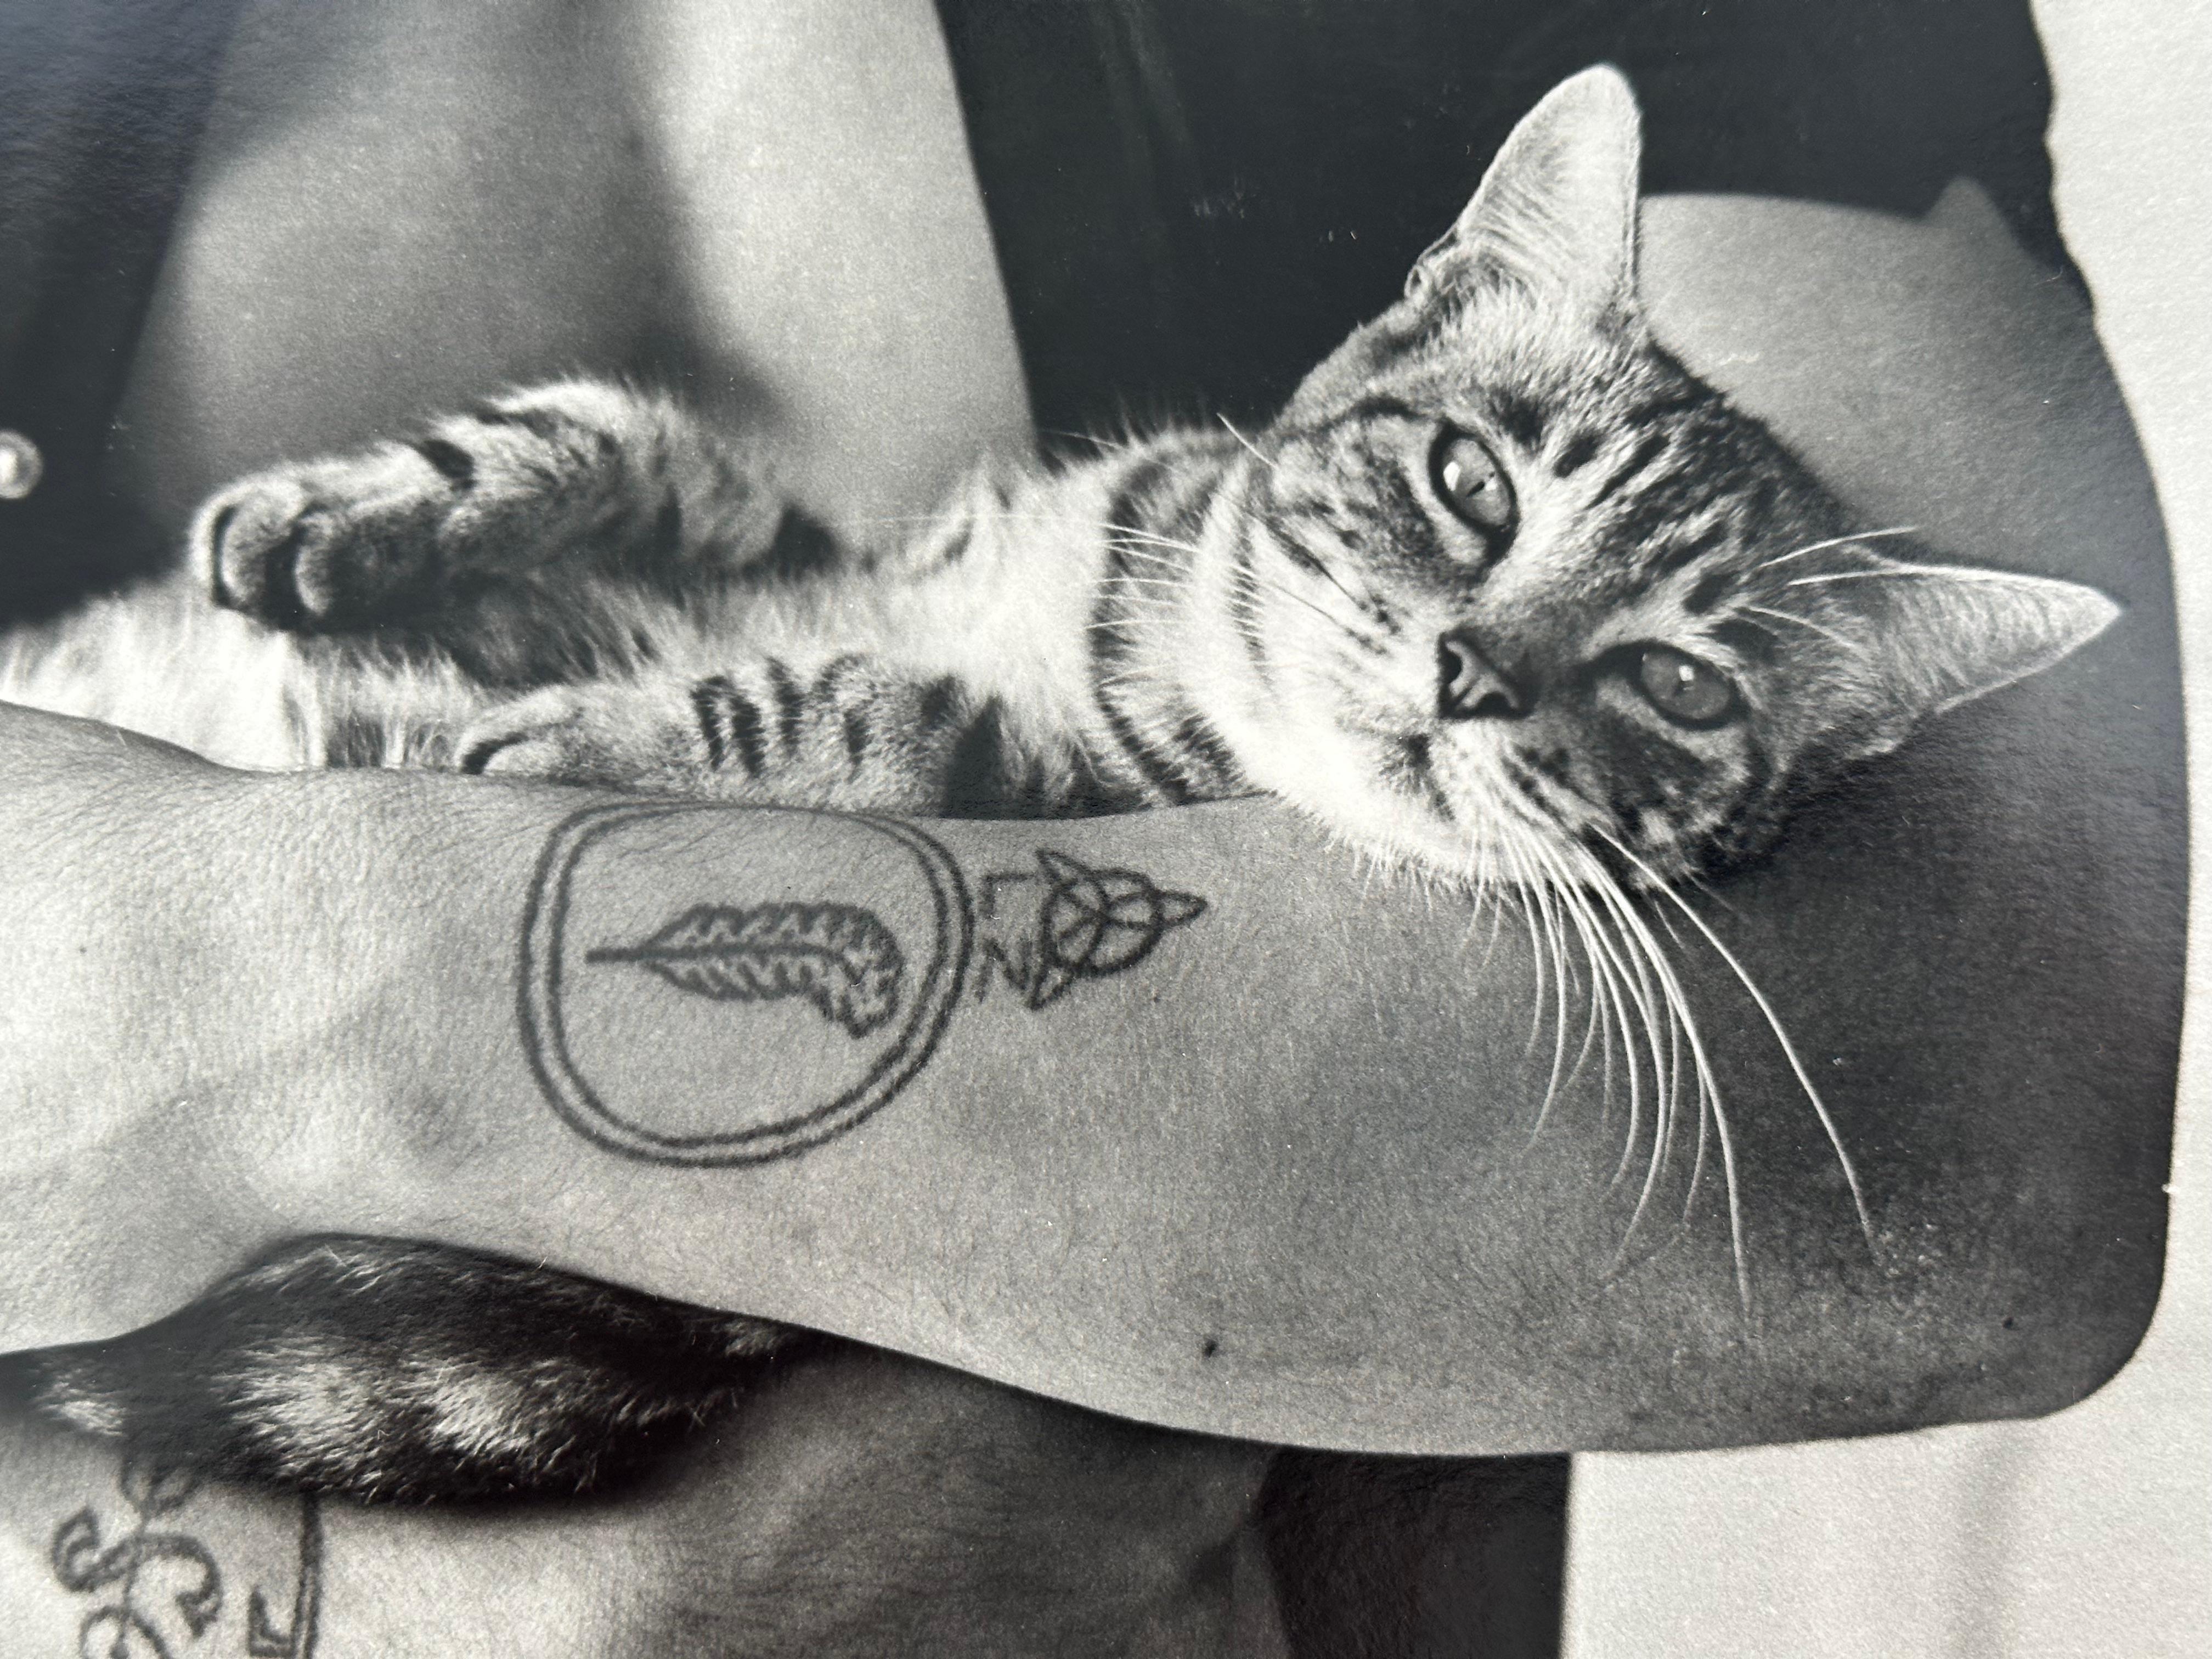 Christopher Makos, photographe américain né en 1948. Homme tatoué tenant un chat, vers 1970. Signé au crayon rouge au verso.

Taille 8.25 x 10  pouces. Non encadré et non monté.

Cet exemple est une photo de presse envoyée aux bureaux de After Dark